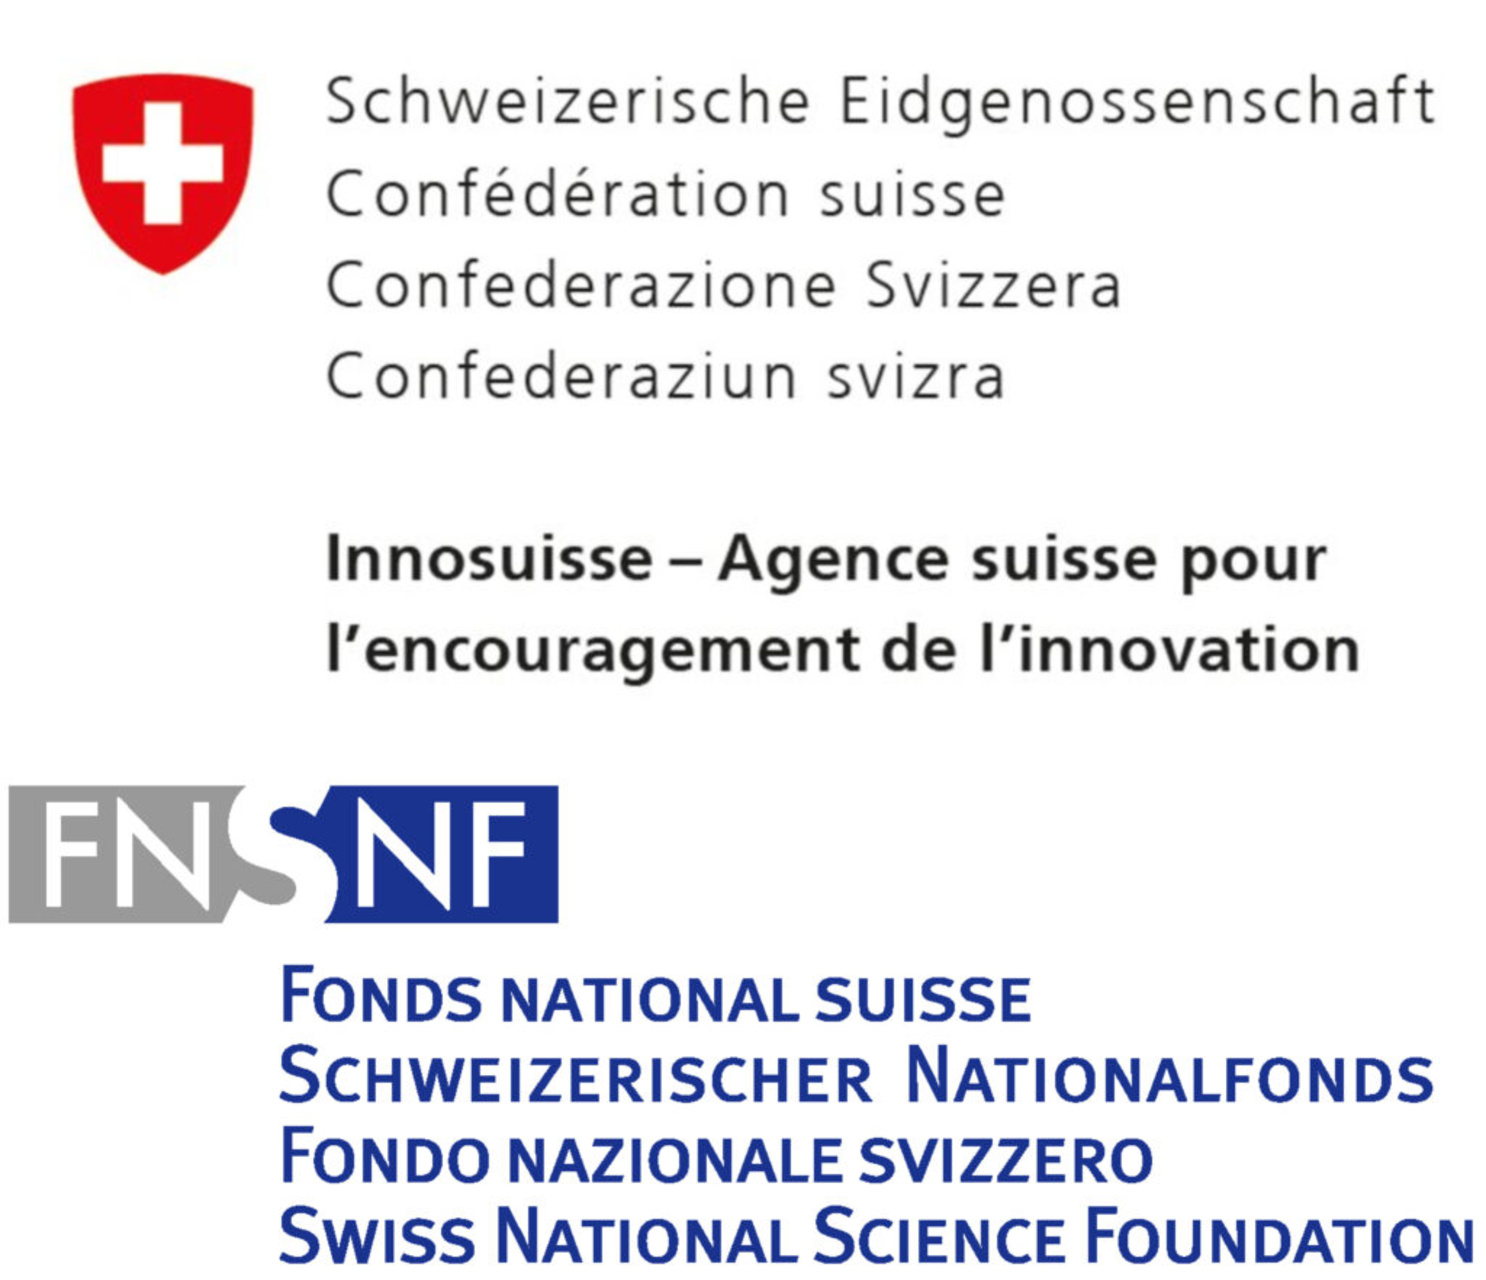 Боловсрол, судалгаа, инноваци: 2025-2028 он хүртэл дөрвөн жилийн хугацаанд ERI салбарыг дэмжих, Швейцарийн удирдлагад зориулан Холбооны Зөвлөлийн Парламентад илгээсэн илгээлт.